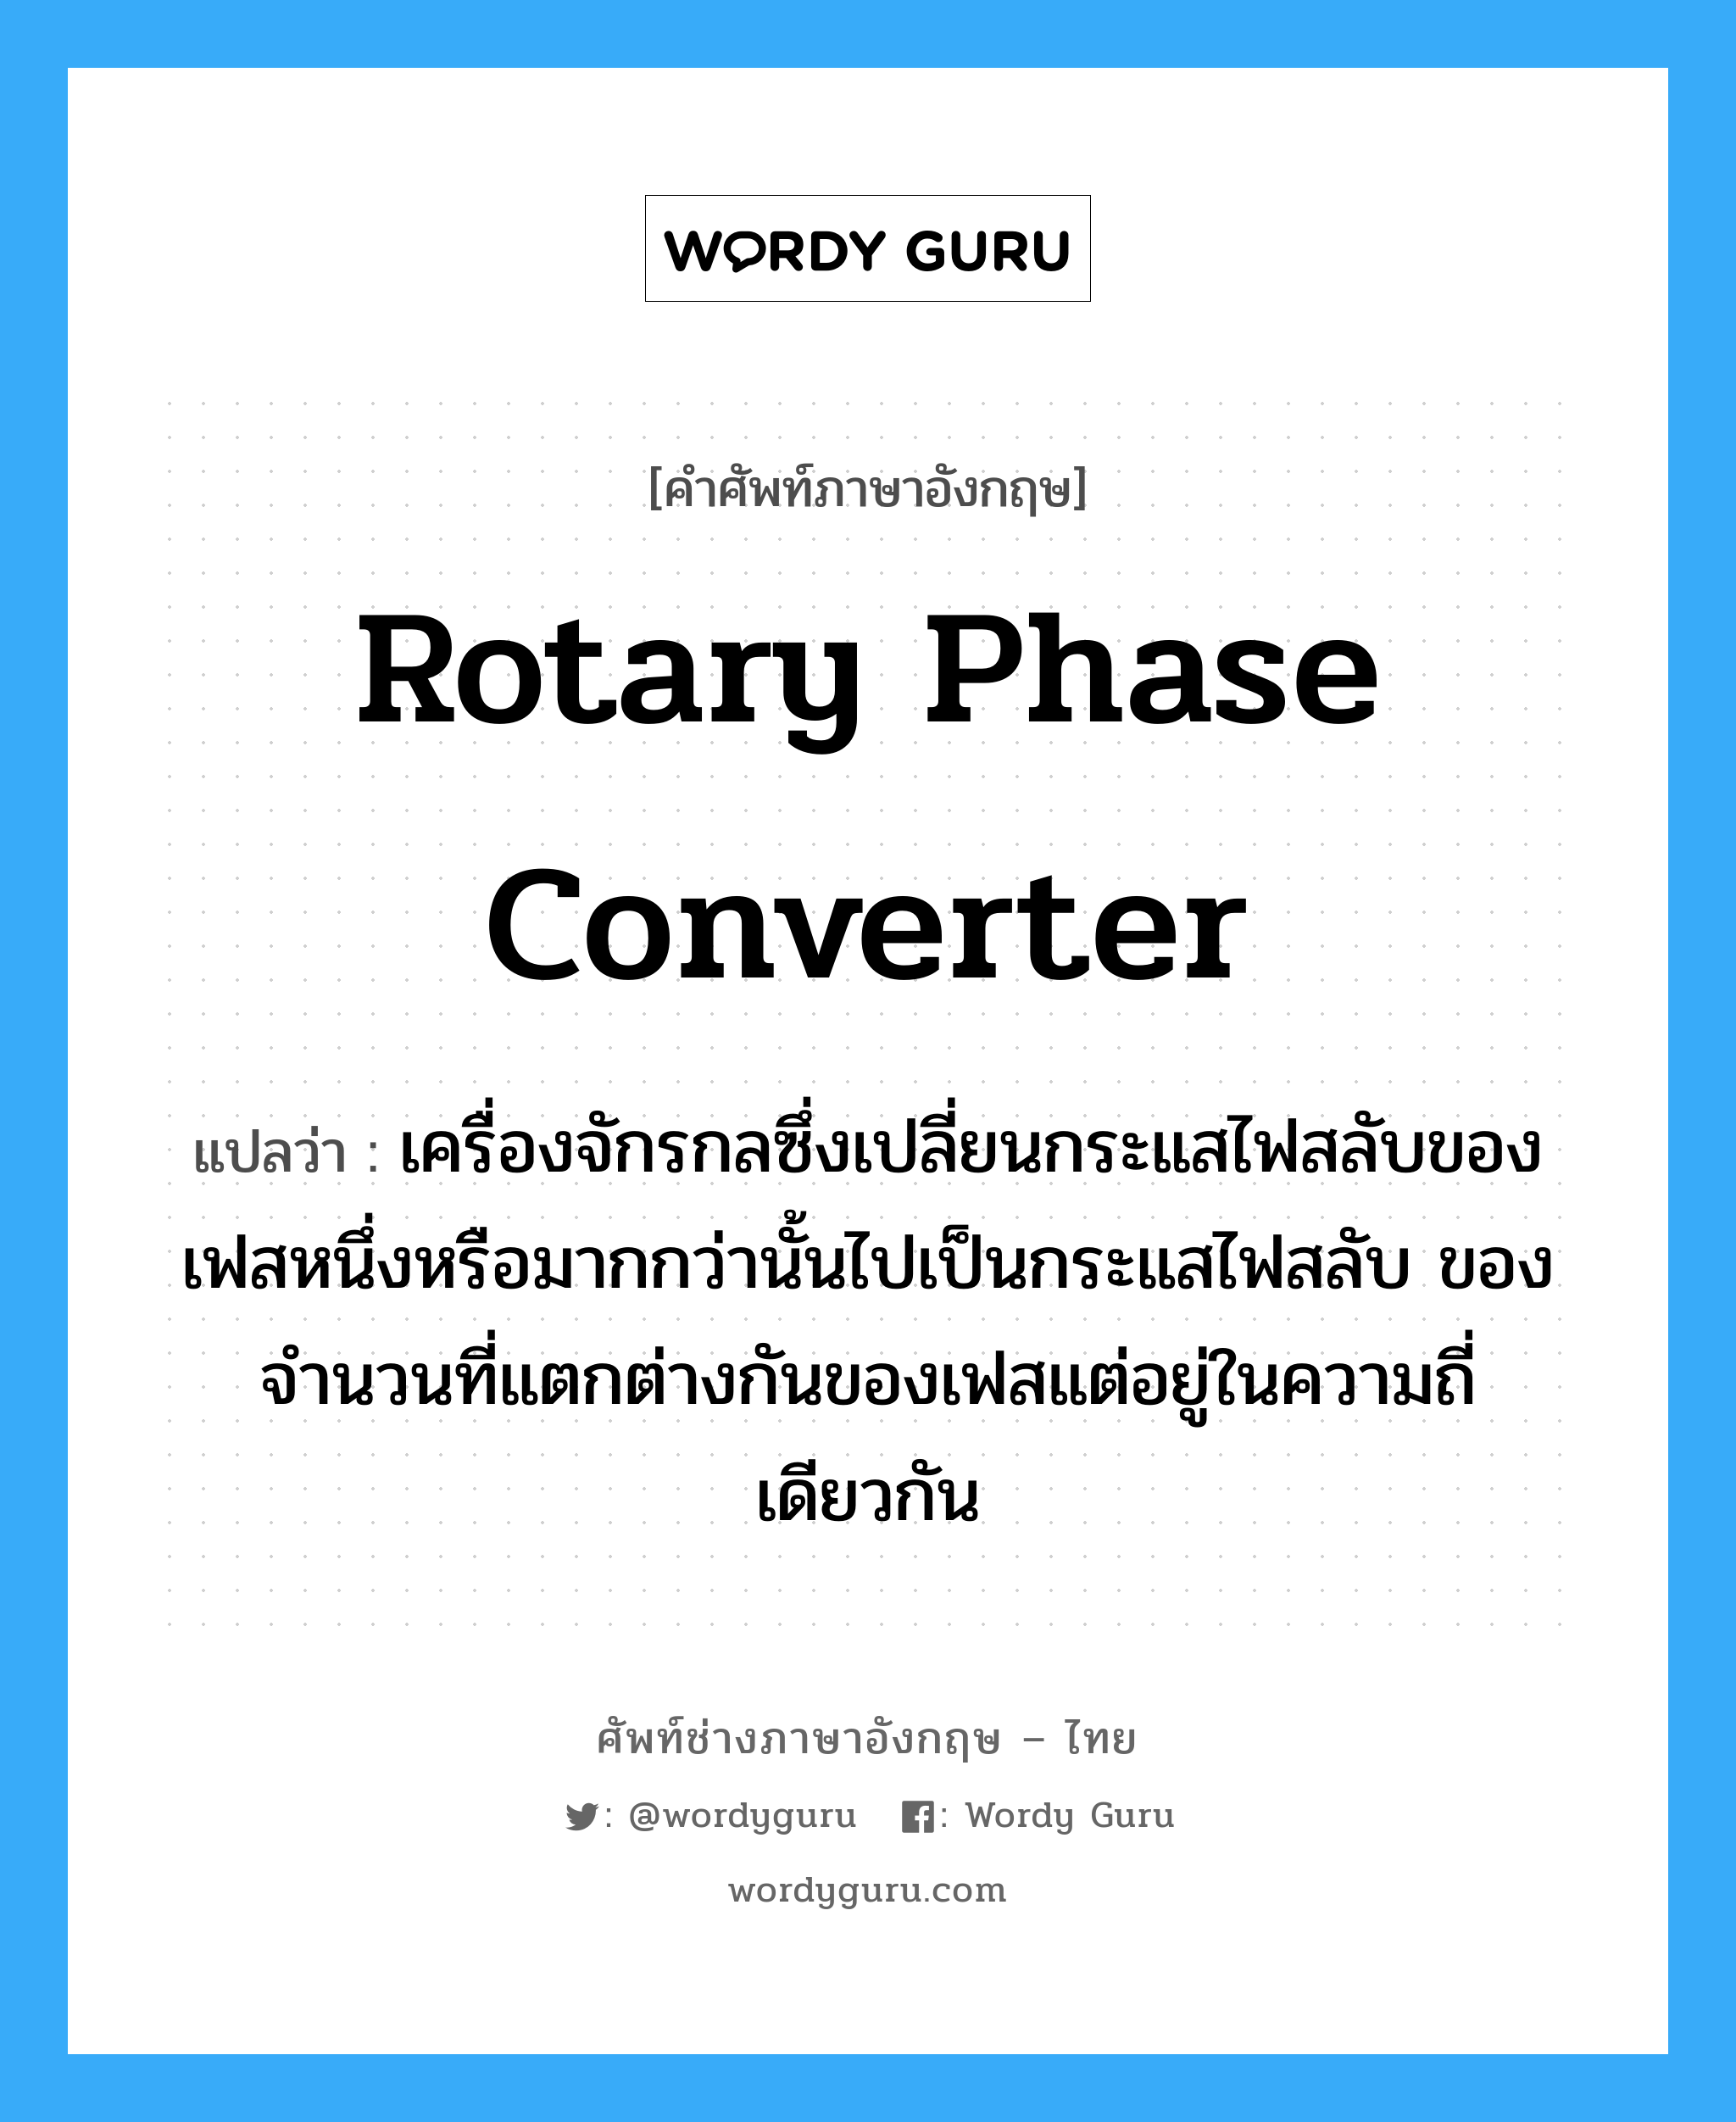 rotary phase converter แปลว่า?, คำศัพท์ช่างภาษาอังกฤษ - ไทย rotary phase converter คำศัพท์ภาษาอังกฤษ rotary phase converter แปลว่า เครื่องจักรกลซึ่งเปลี่ยนกระแสไฟสลับของเฟสหนึ่งหรือมากกว่านั้นไปเป็นกระแสไฟสลับ ของจำนวนที่แตกต่างกันของเฟสแต่อยู่ในความถี่เดียวกัน